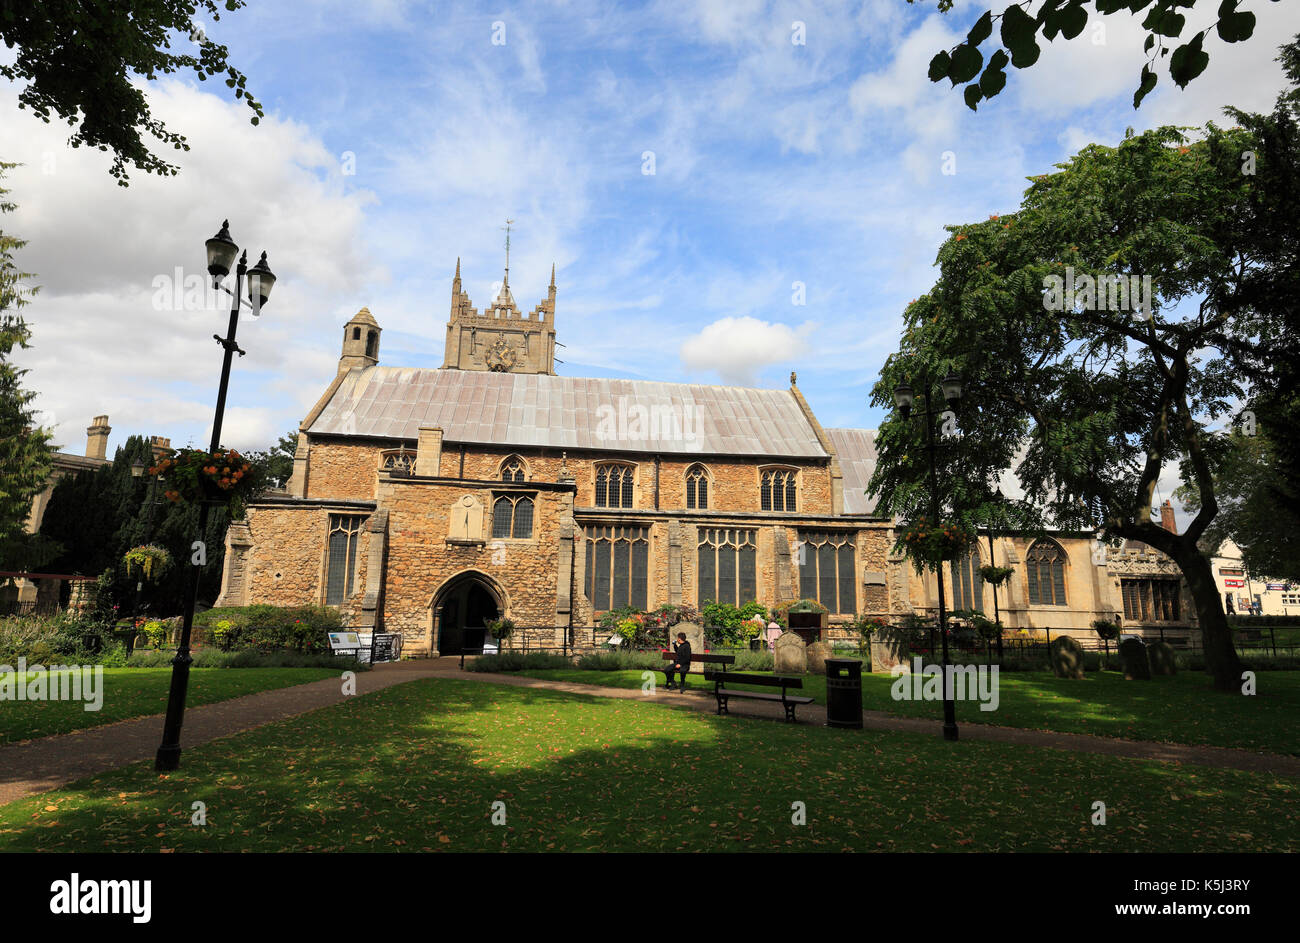 L'église de Saint Pierre et Saint Paul Wisbech, England, UK. Banque D'Images